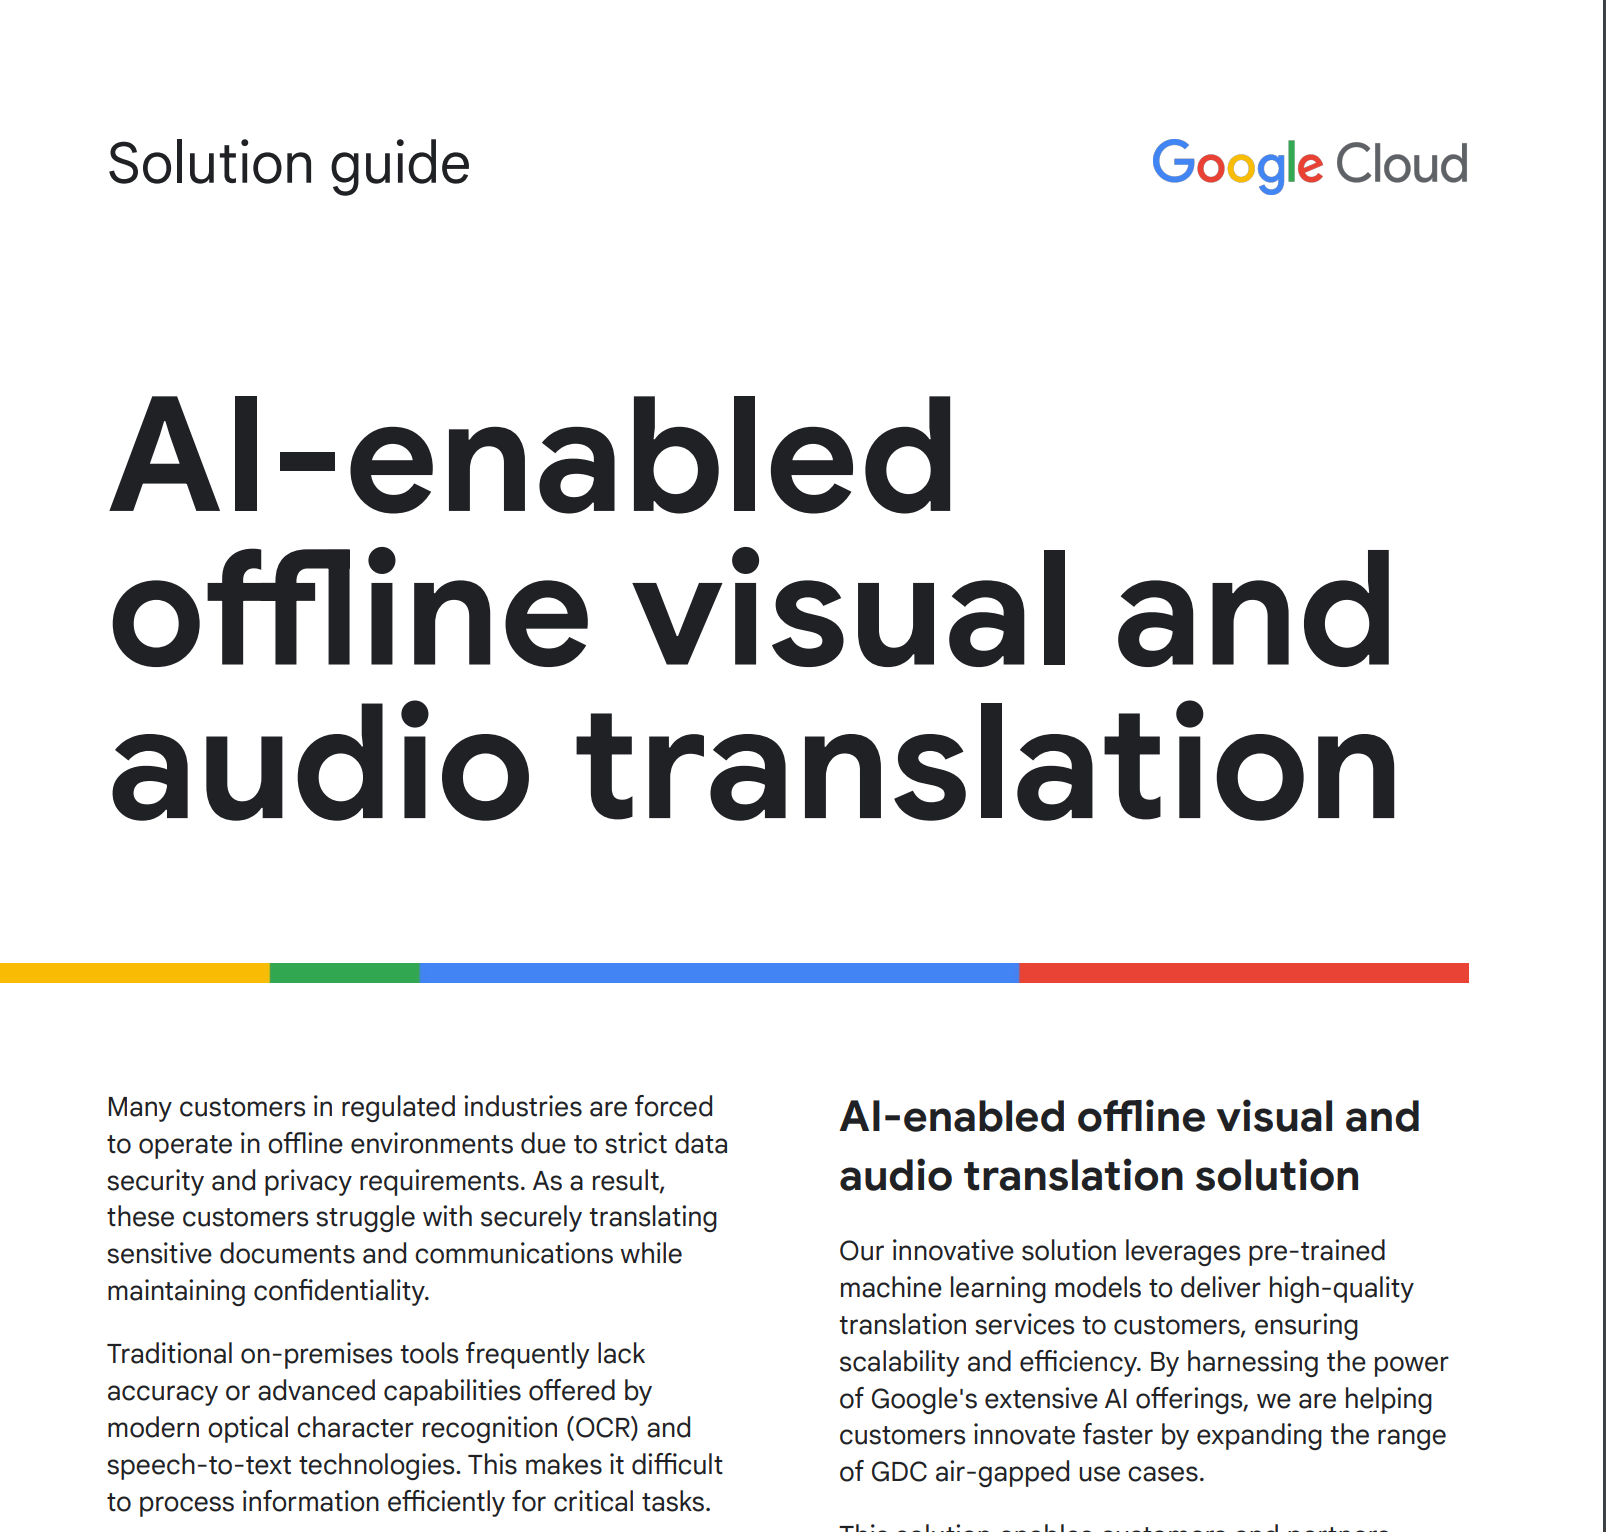 Guía de soluciones para la traducción de audio y visual sin conexión basada en IA